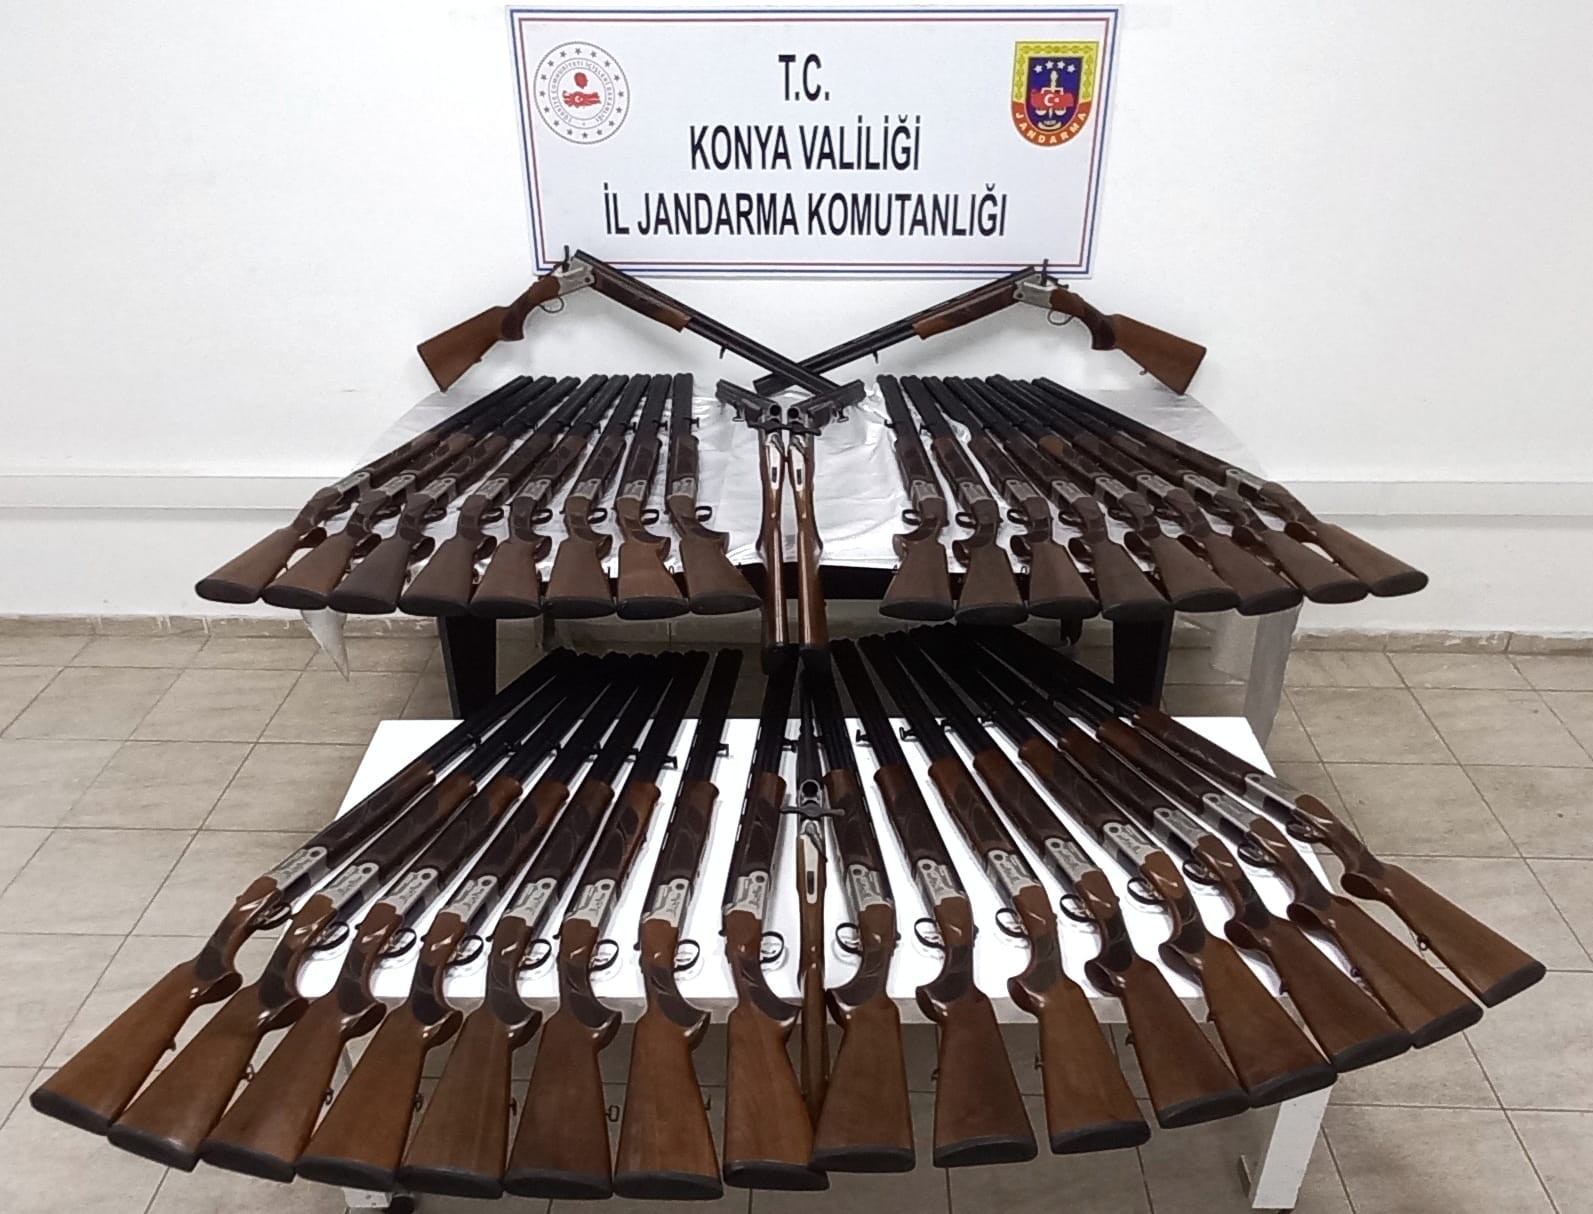 Konya’da Yasa Dışı Üretildiği İddia Edilen 39 Av Tüfeği Ele Geçirildi